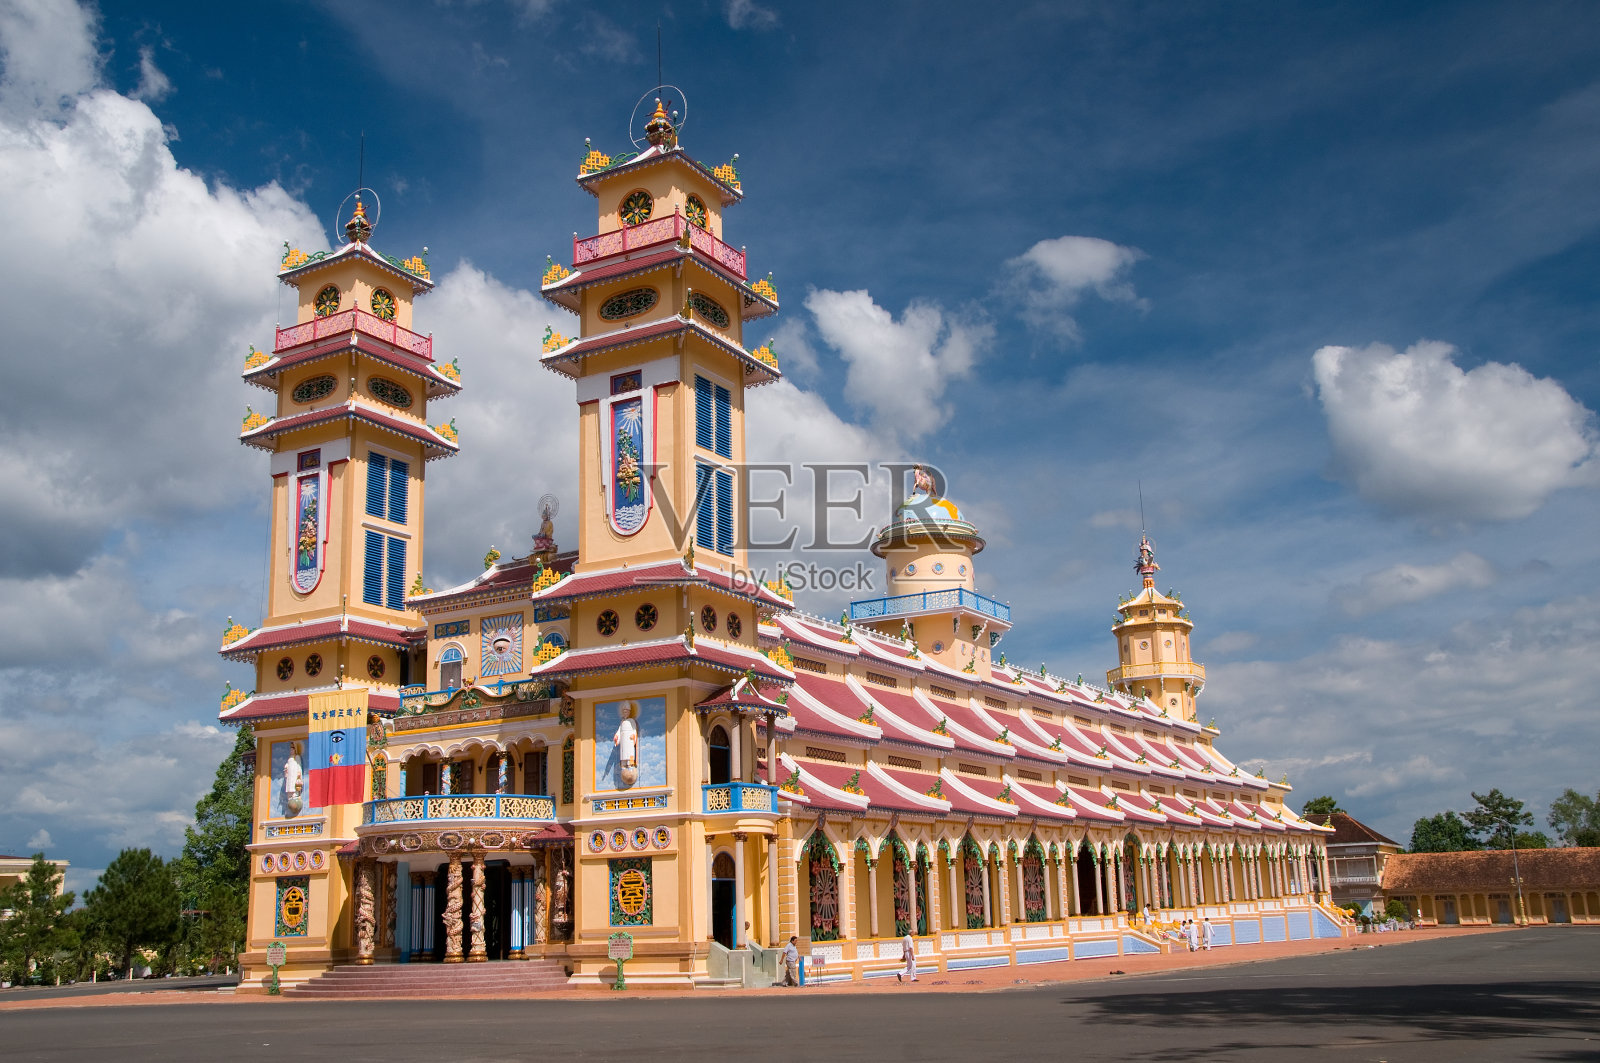 越南胡志明市附近的大宁寺高台寺照片摄影图片